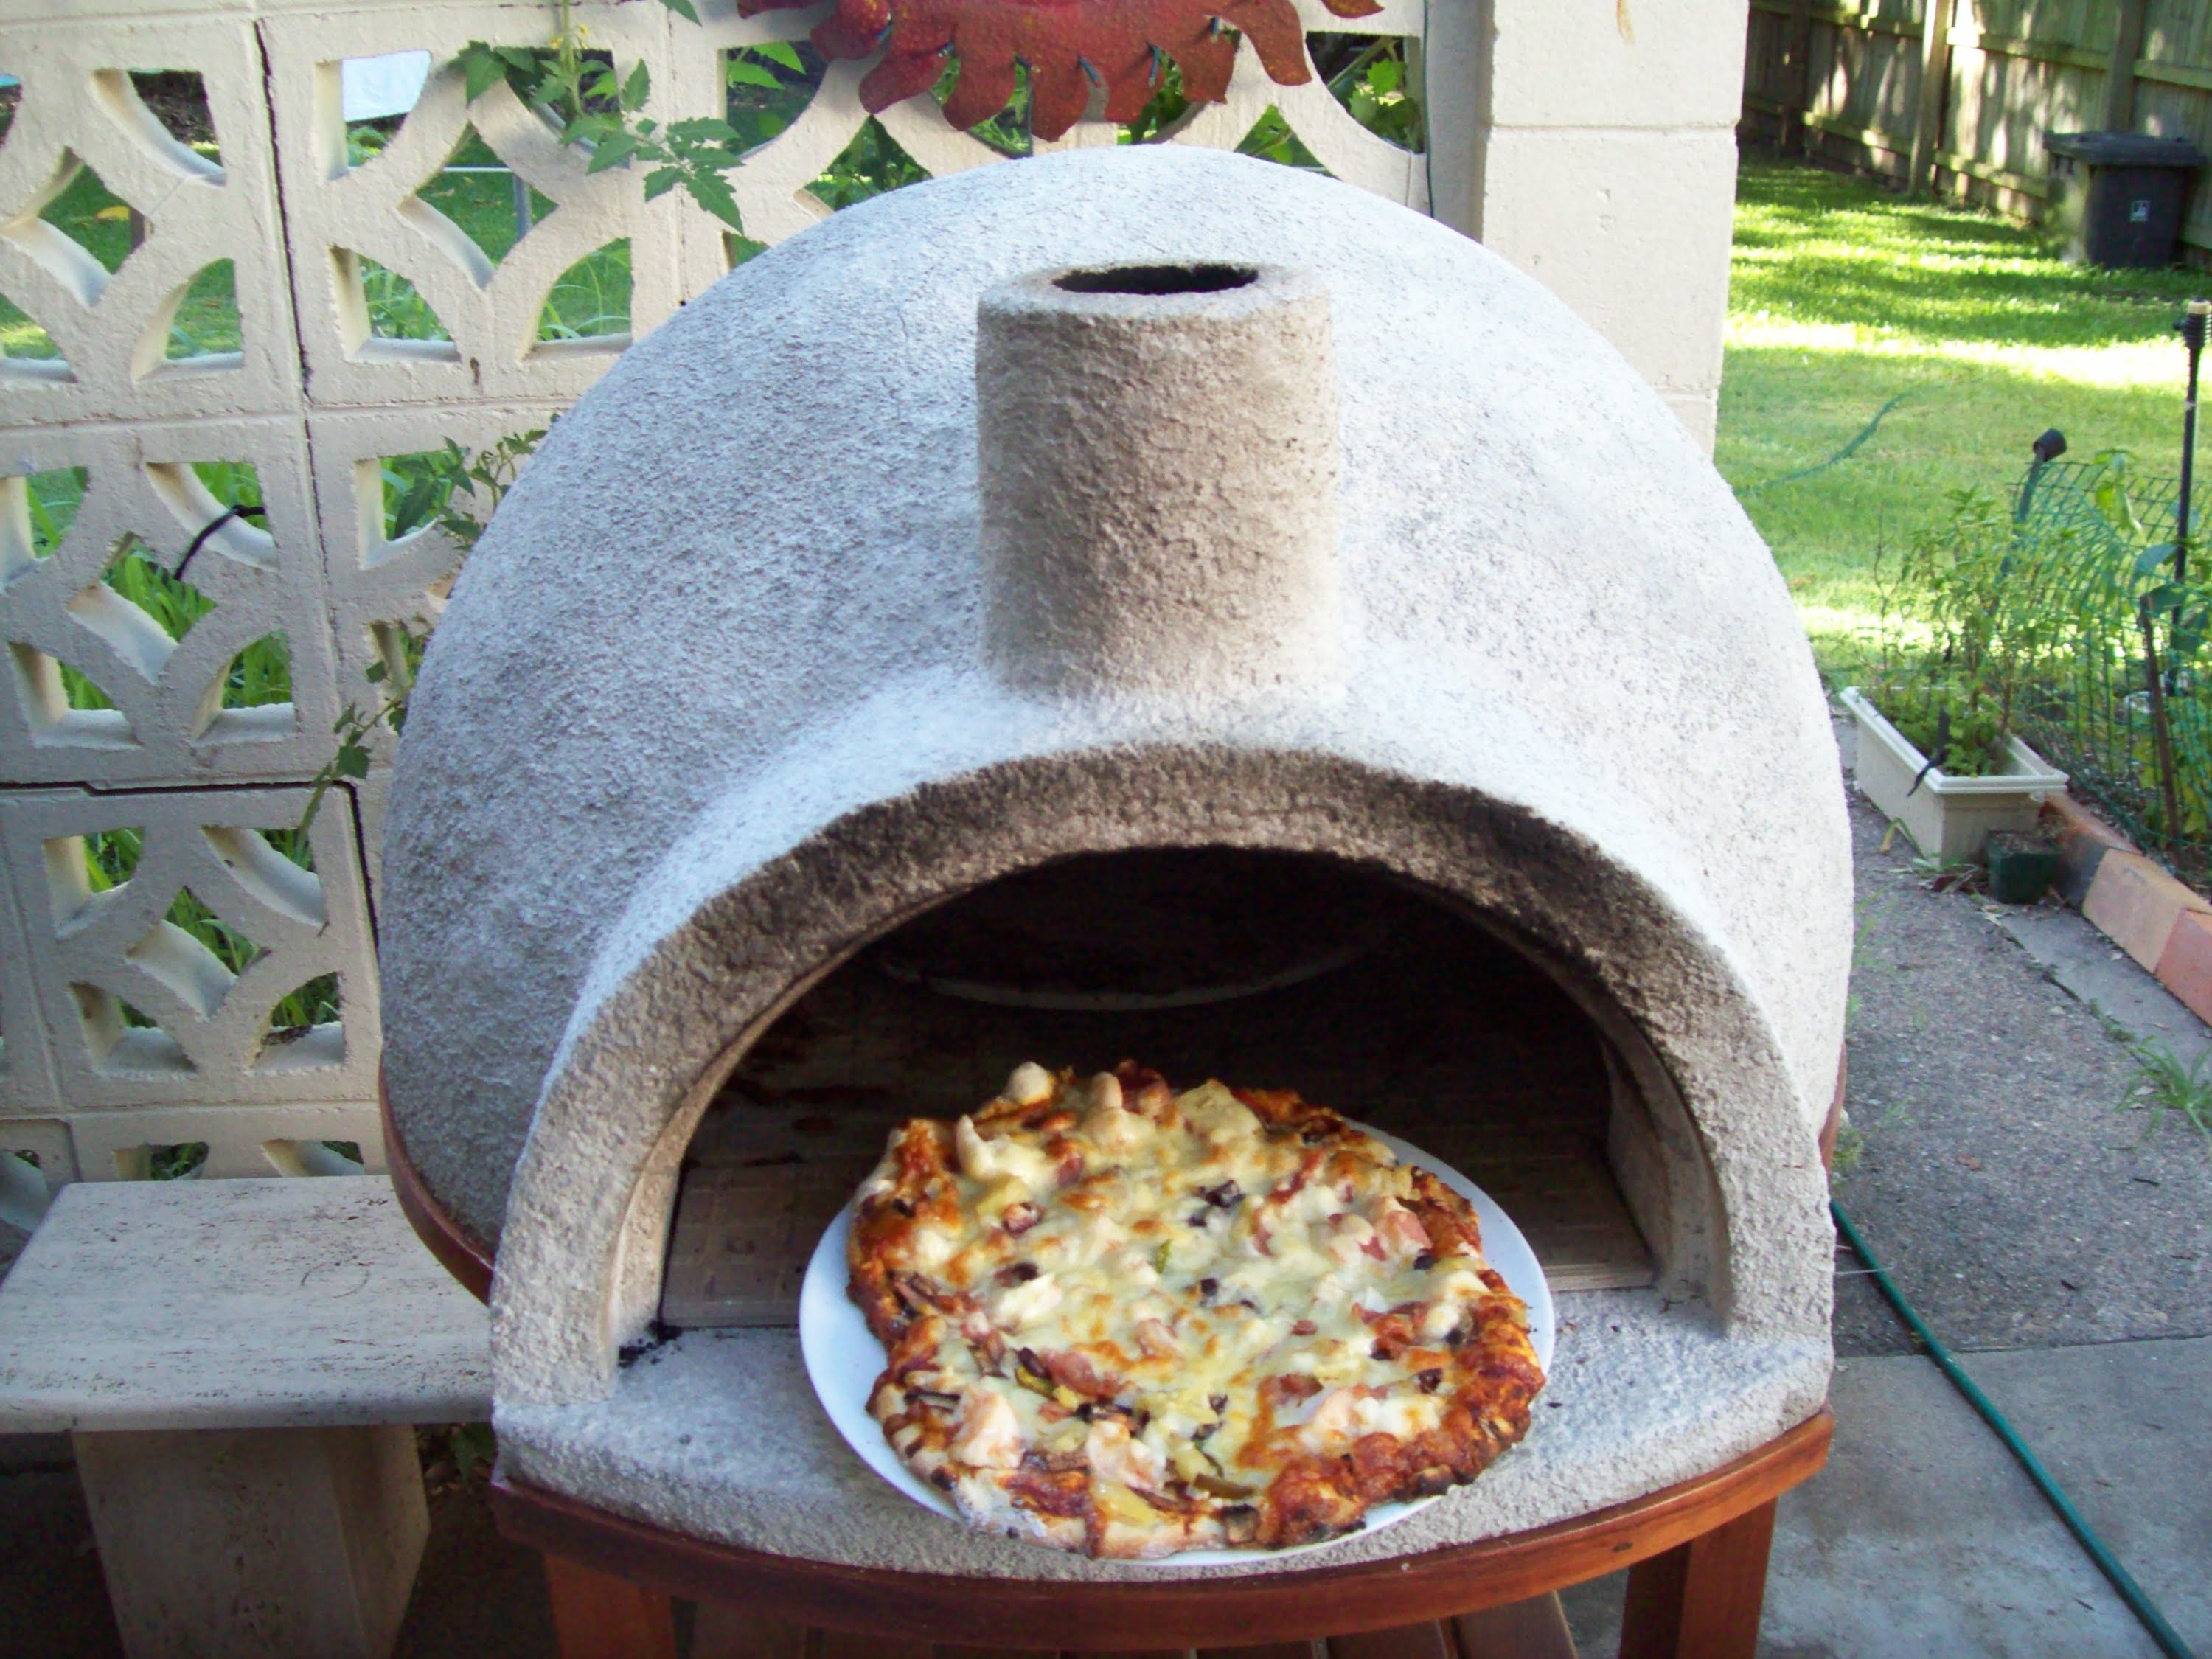 Terzijde een miljard Geologie DIY Video: How to Build a Backyard Wood Fire Pizza Oven Under $100